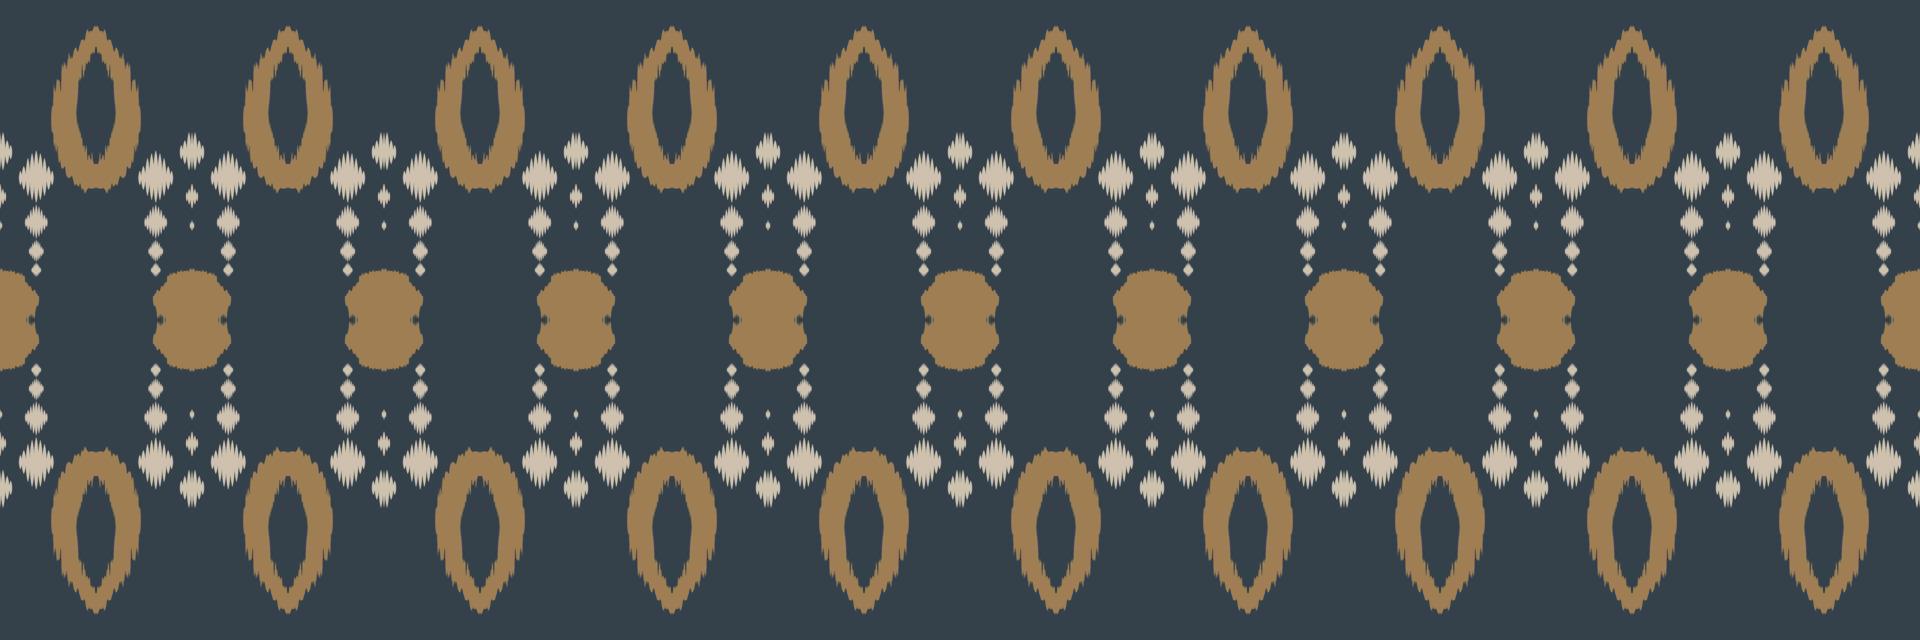 Ikat druckt Stammes-Chevron-nahtloses Muster. ethnische geometrische ikkat batik digitaler vektor textildesign für drucke stoff saree mughal pinsel symbol schwaden textur kurti kurtis kurtas